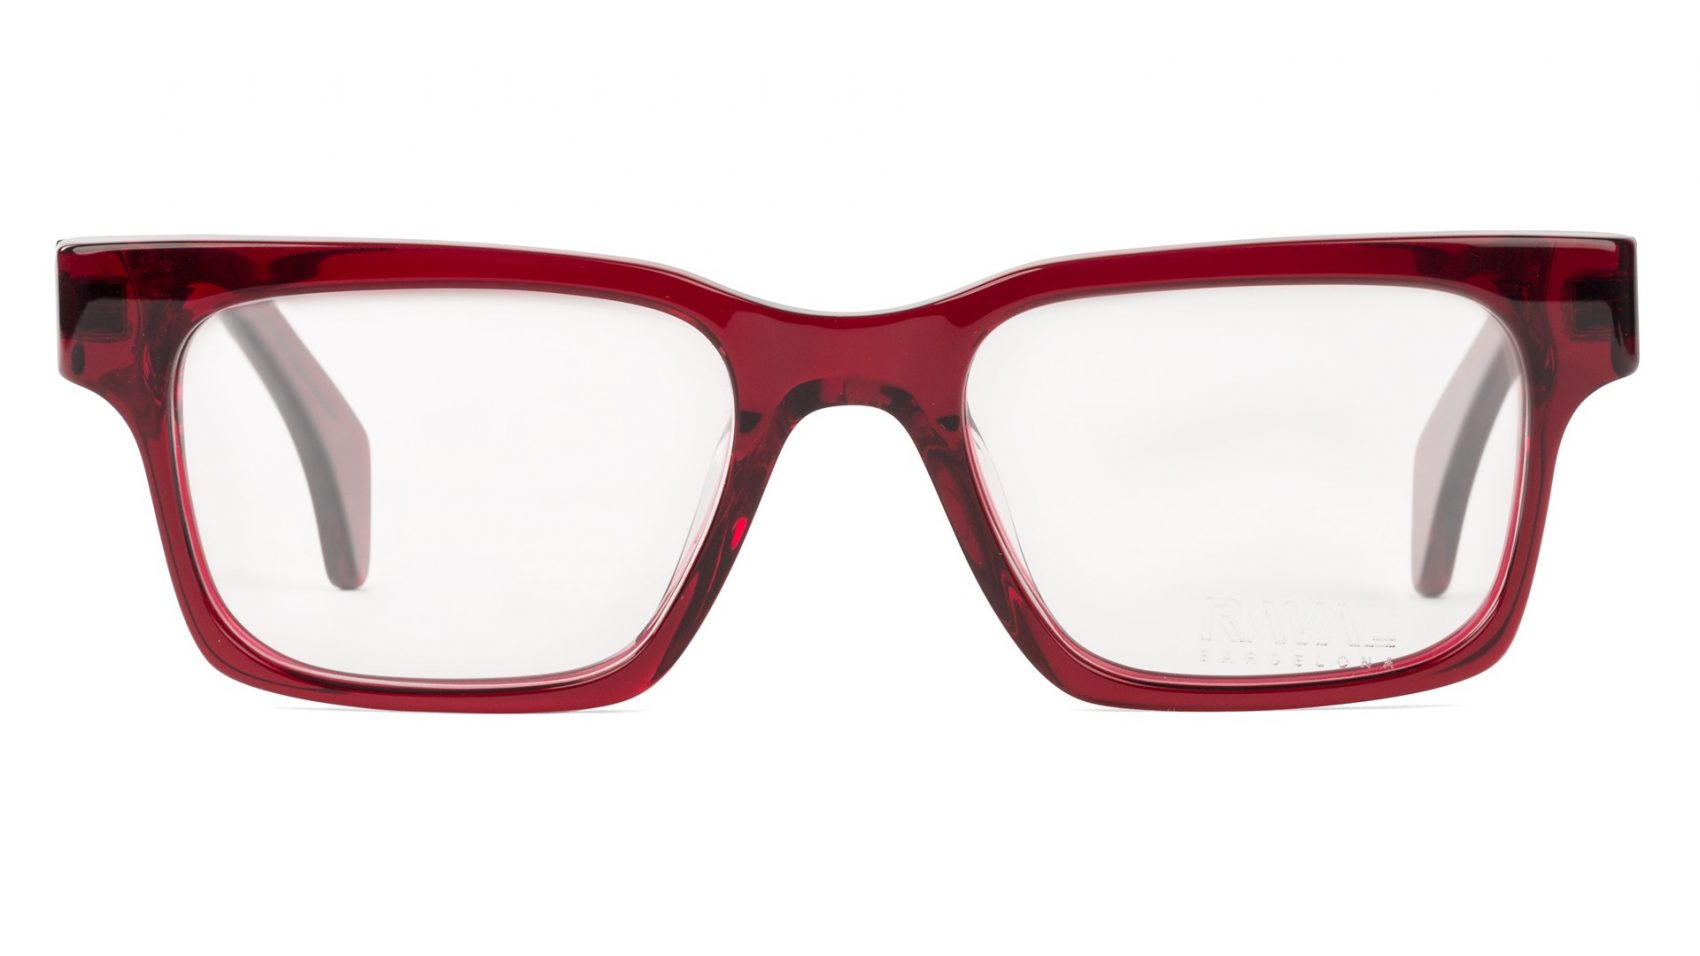 Gafas de vista Retro Style ROBADORA by Raval Eyewear-Óptica Gran Vía Barcelona